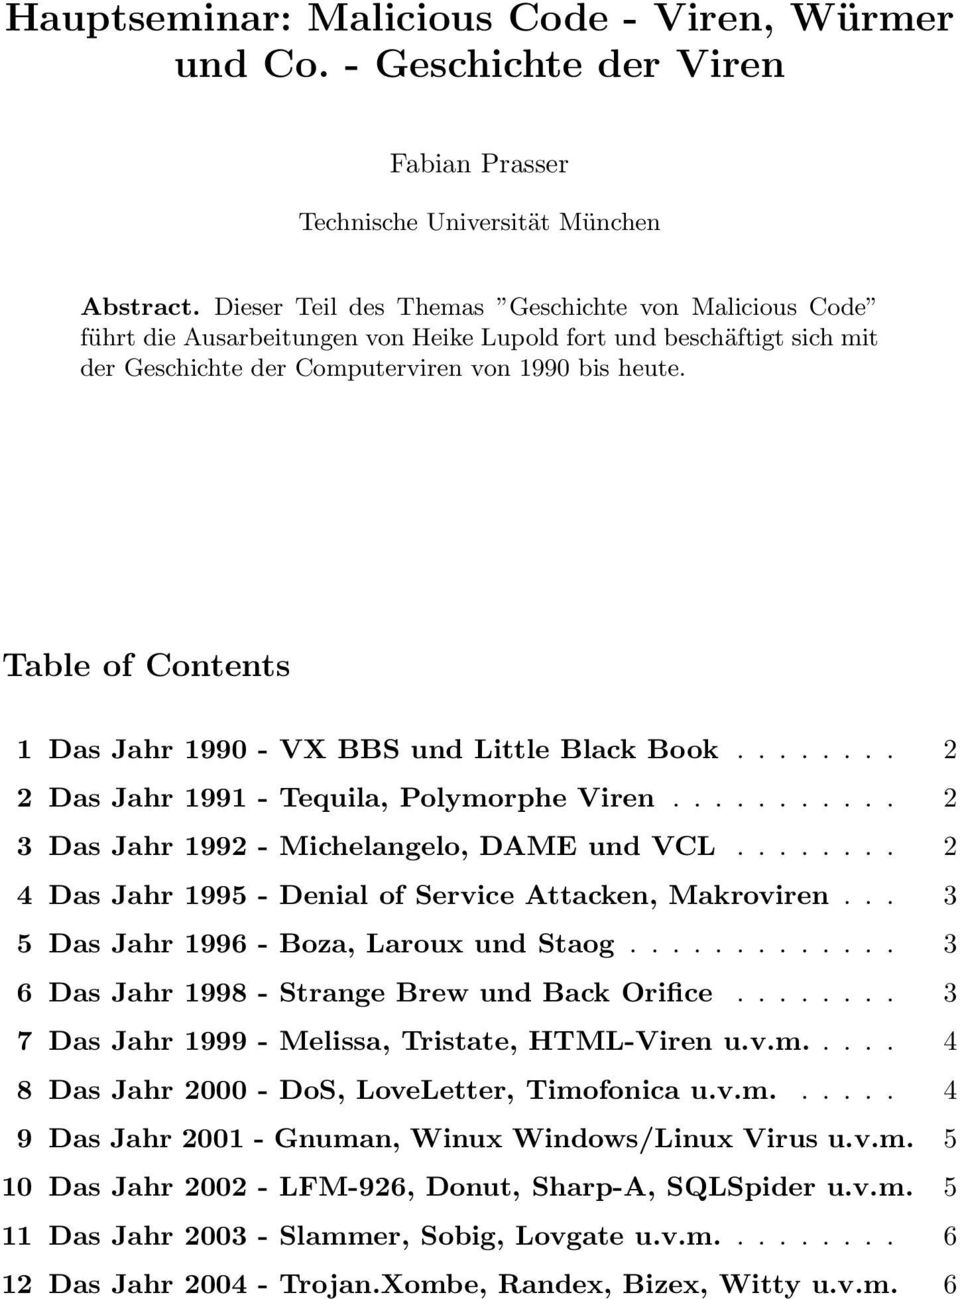 Table of Contents 1 Das Jahr 1990 - VX BBS und Little Black Book........ 2 2 Das Jahr 1991 - Tequila, Polymorphe Viren........... 2 3 Das Jahr 1992 - Michelangelo, DAME und VCL.